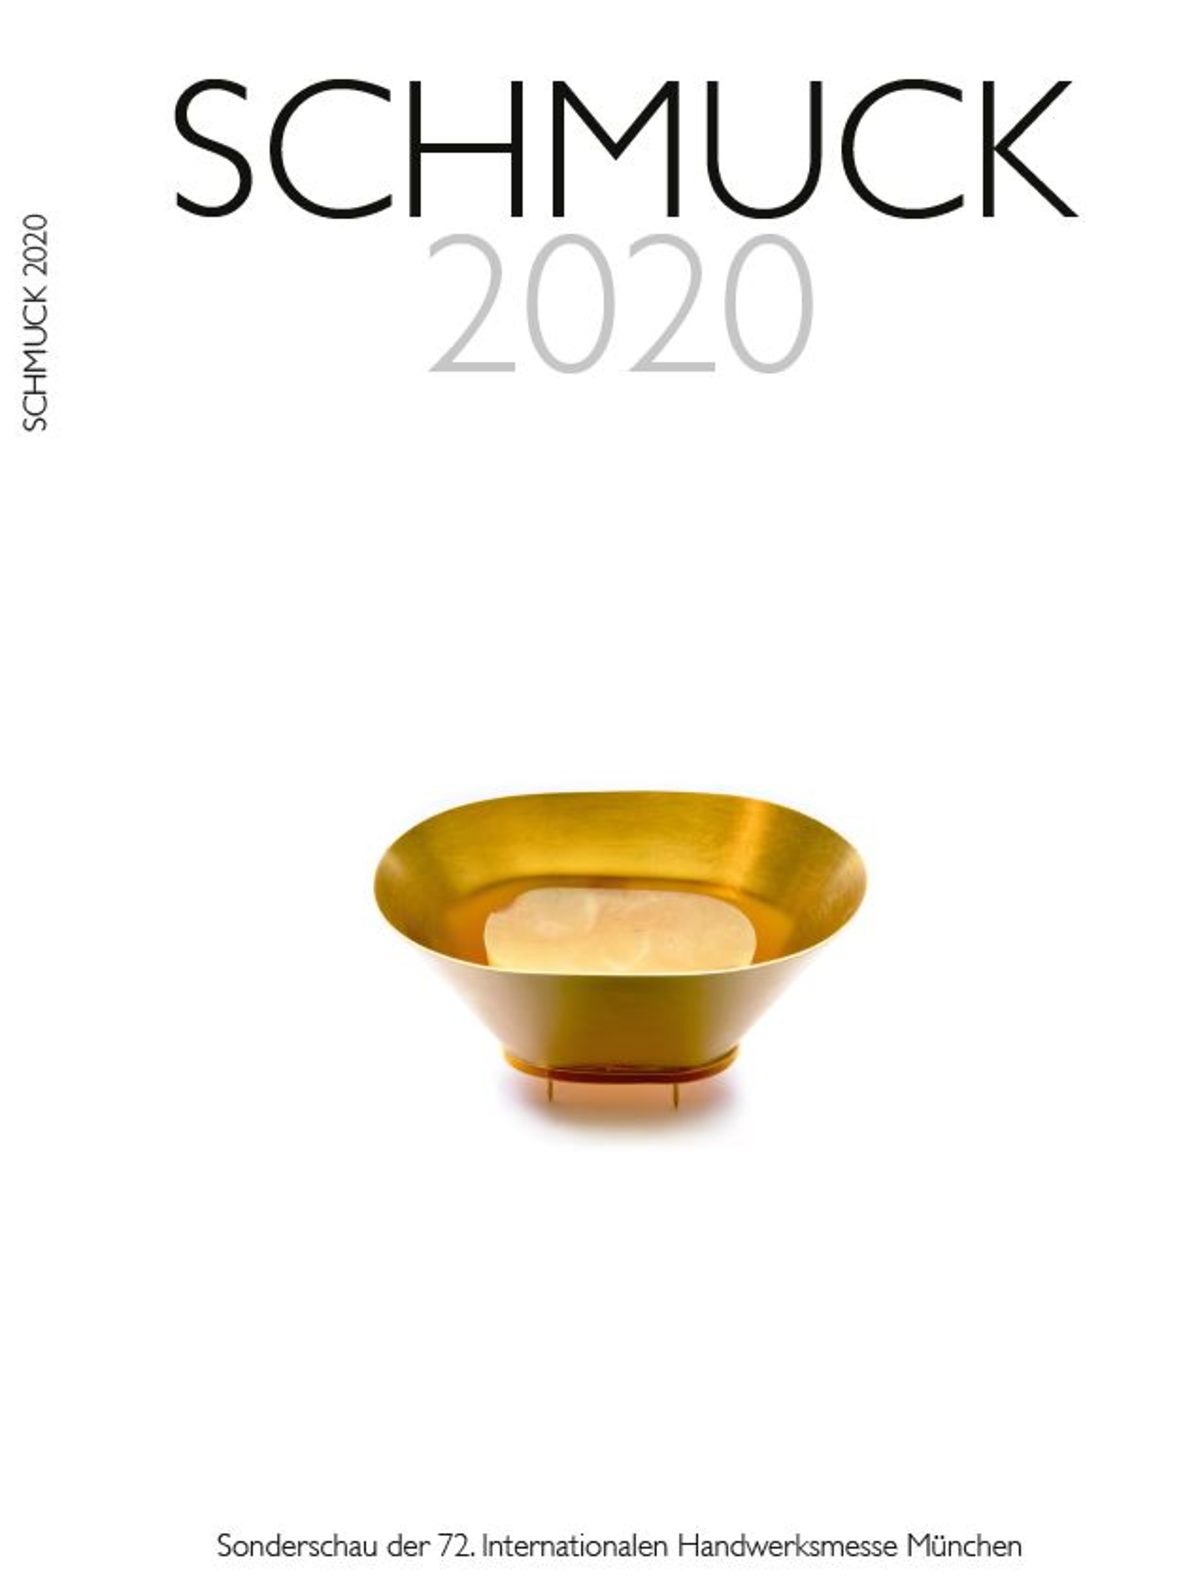 Katalogbild_Schmuck2020